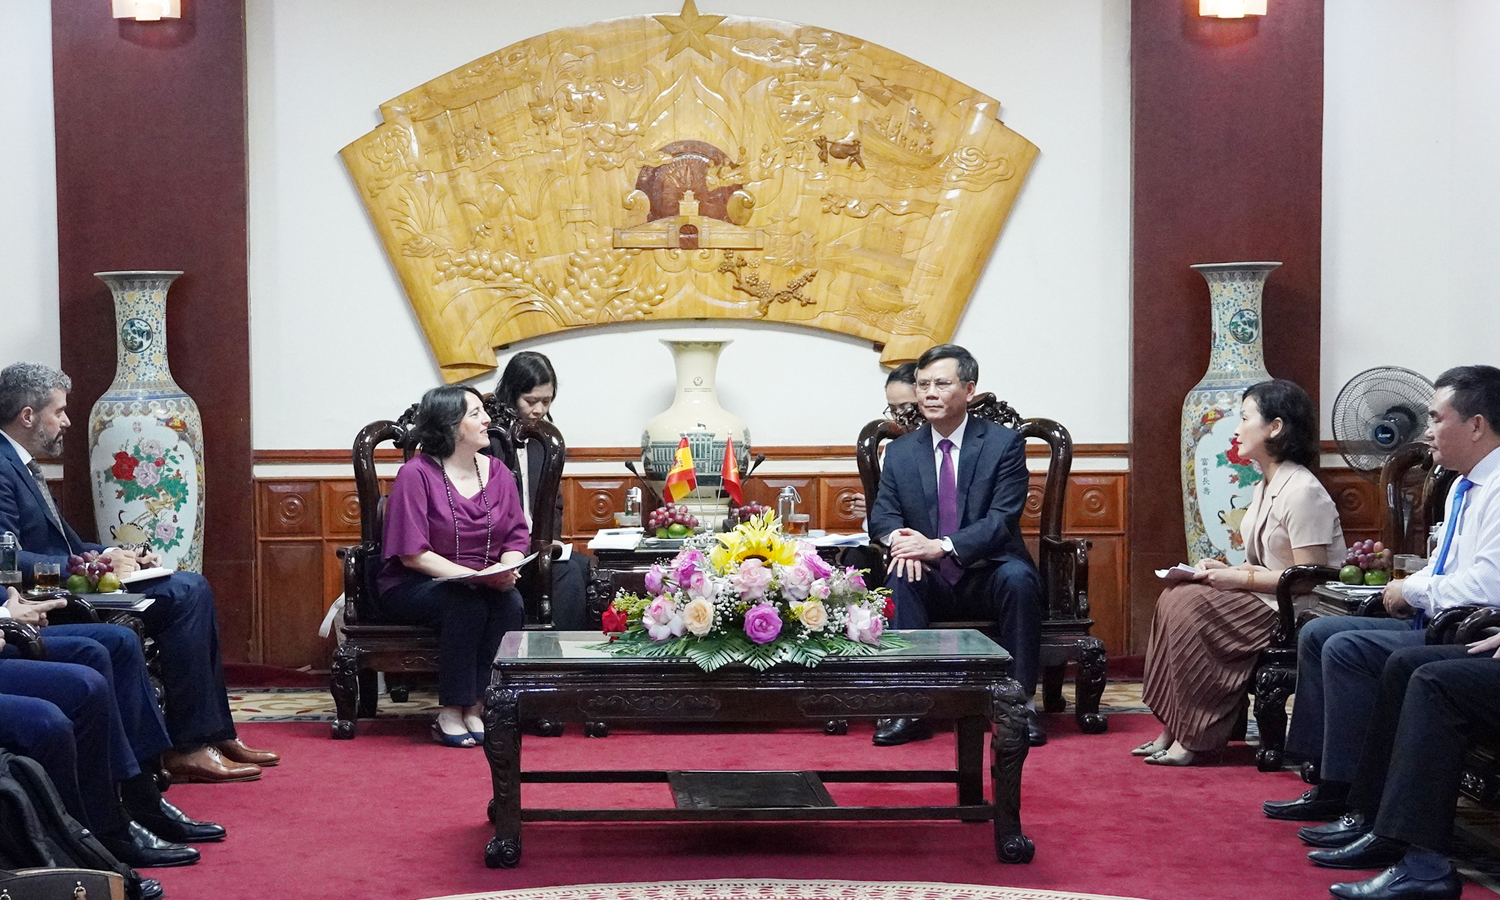 Đồng chí Chủ tịch UBND tỉnh tiếp xã giao Đại sứ Tây Ban Nha tại Việt Nam